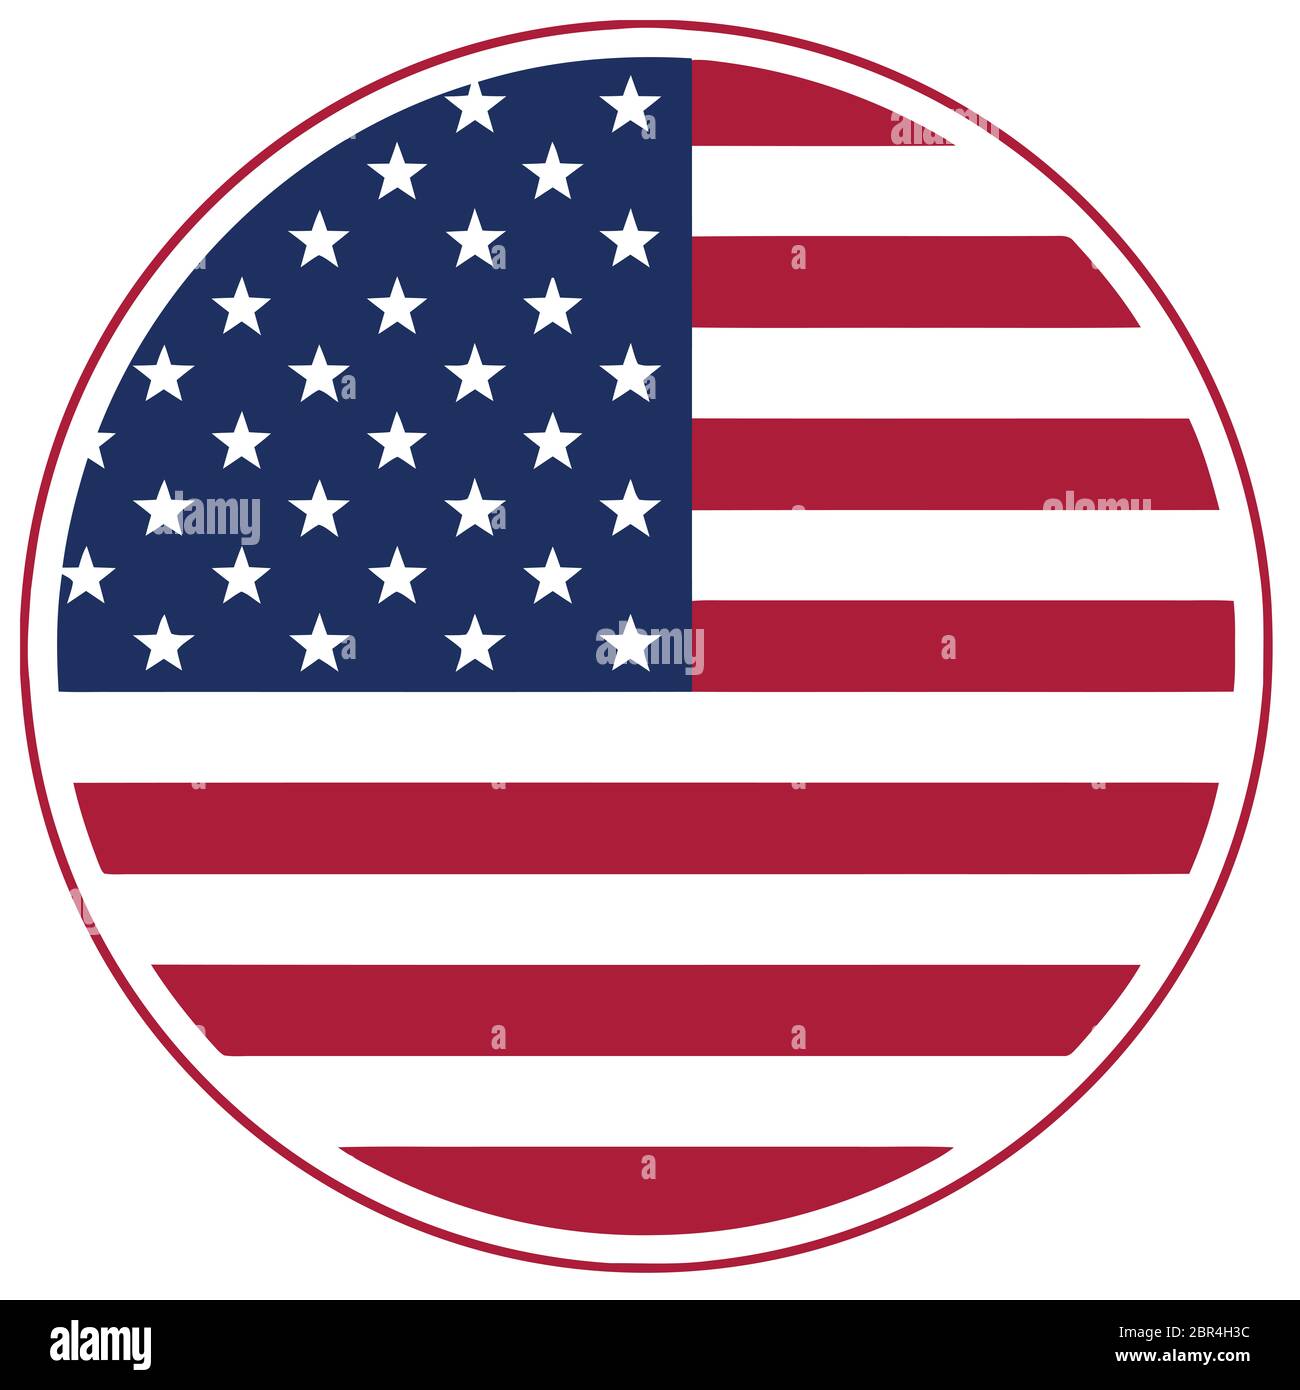 Stati Uniti d'America round circle bandiera americana orgoglio nazionale illustrazione Foto Stock